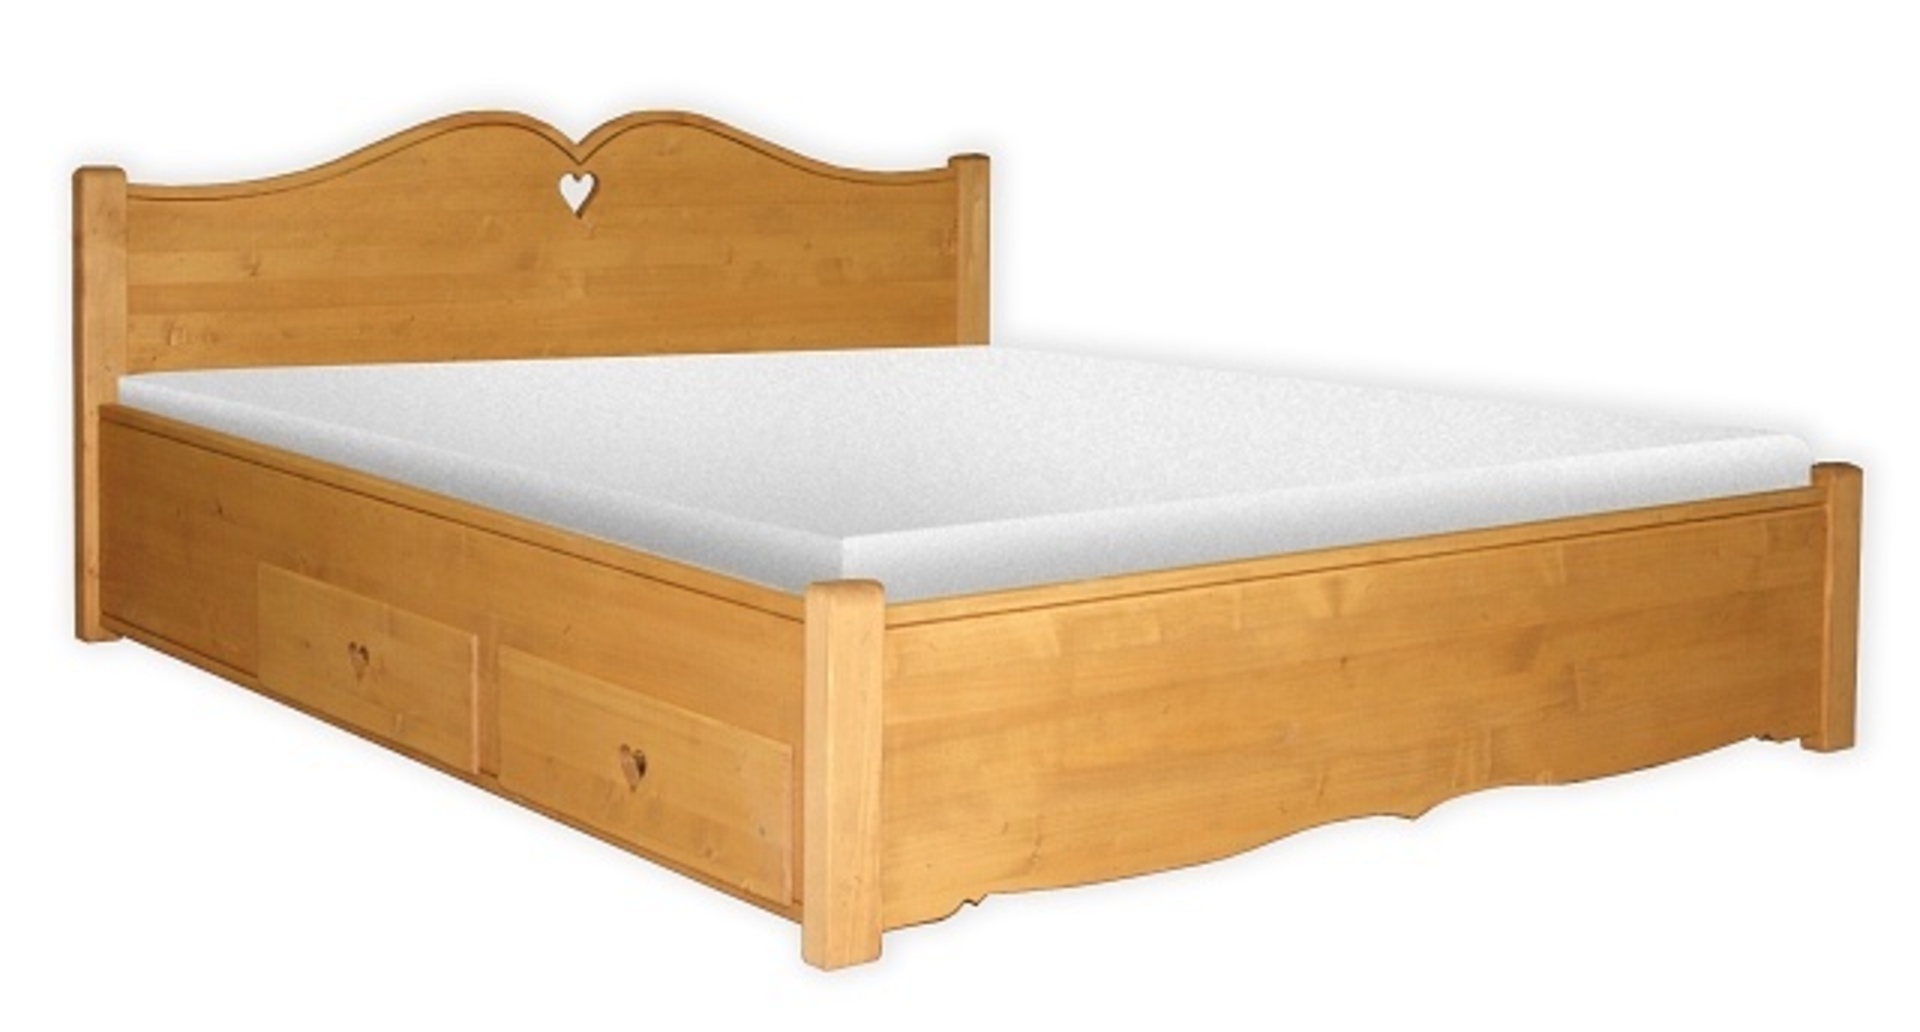 Manželská posteľ z masívneho dreva svetlej farby s masívnym čelom postele na ktorom je vyrezaný tvar srdca.